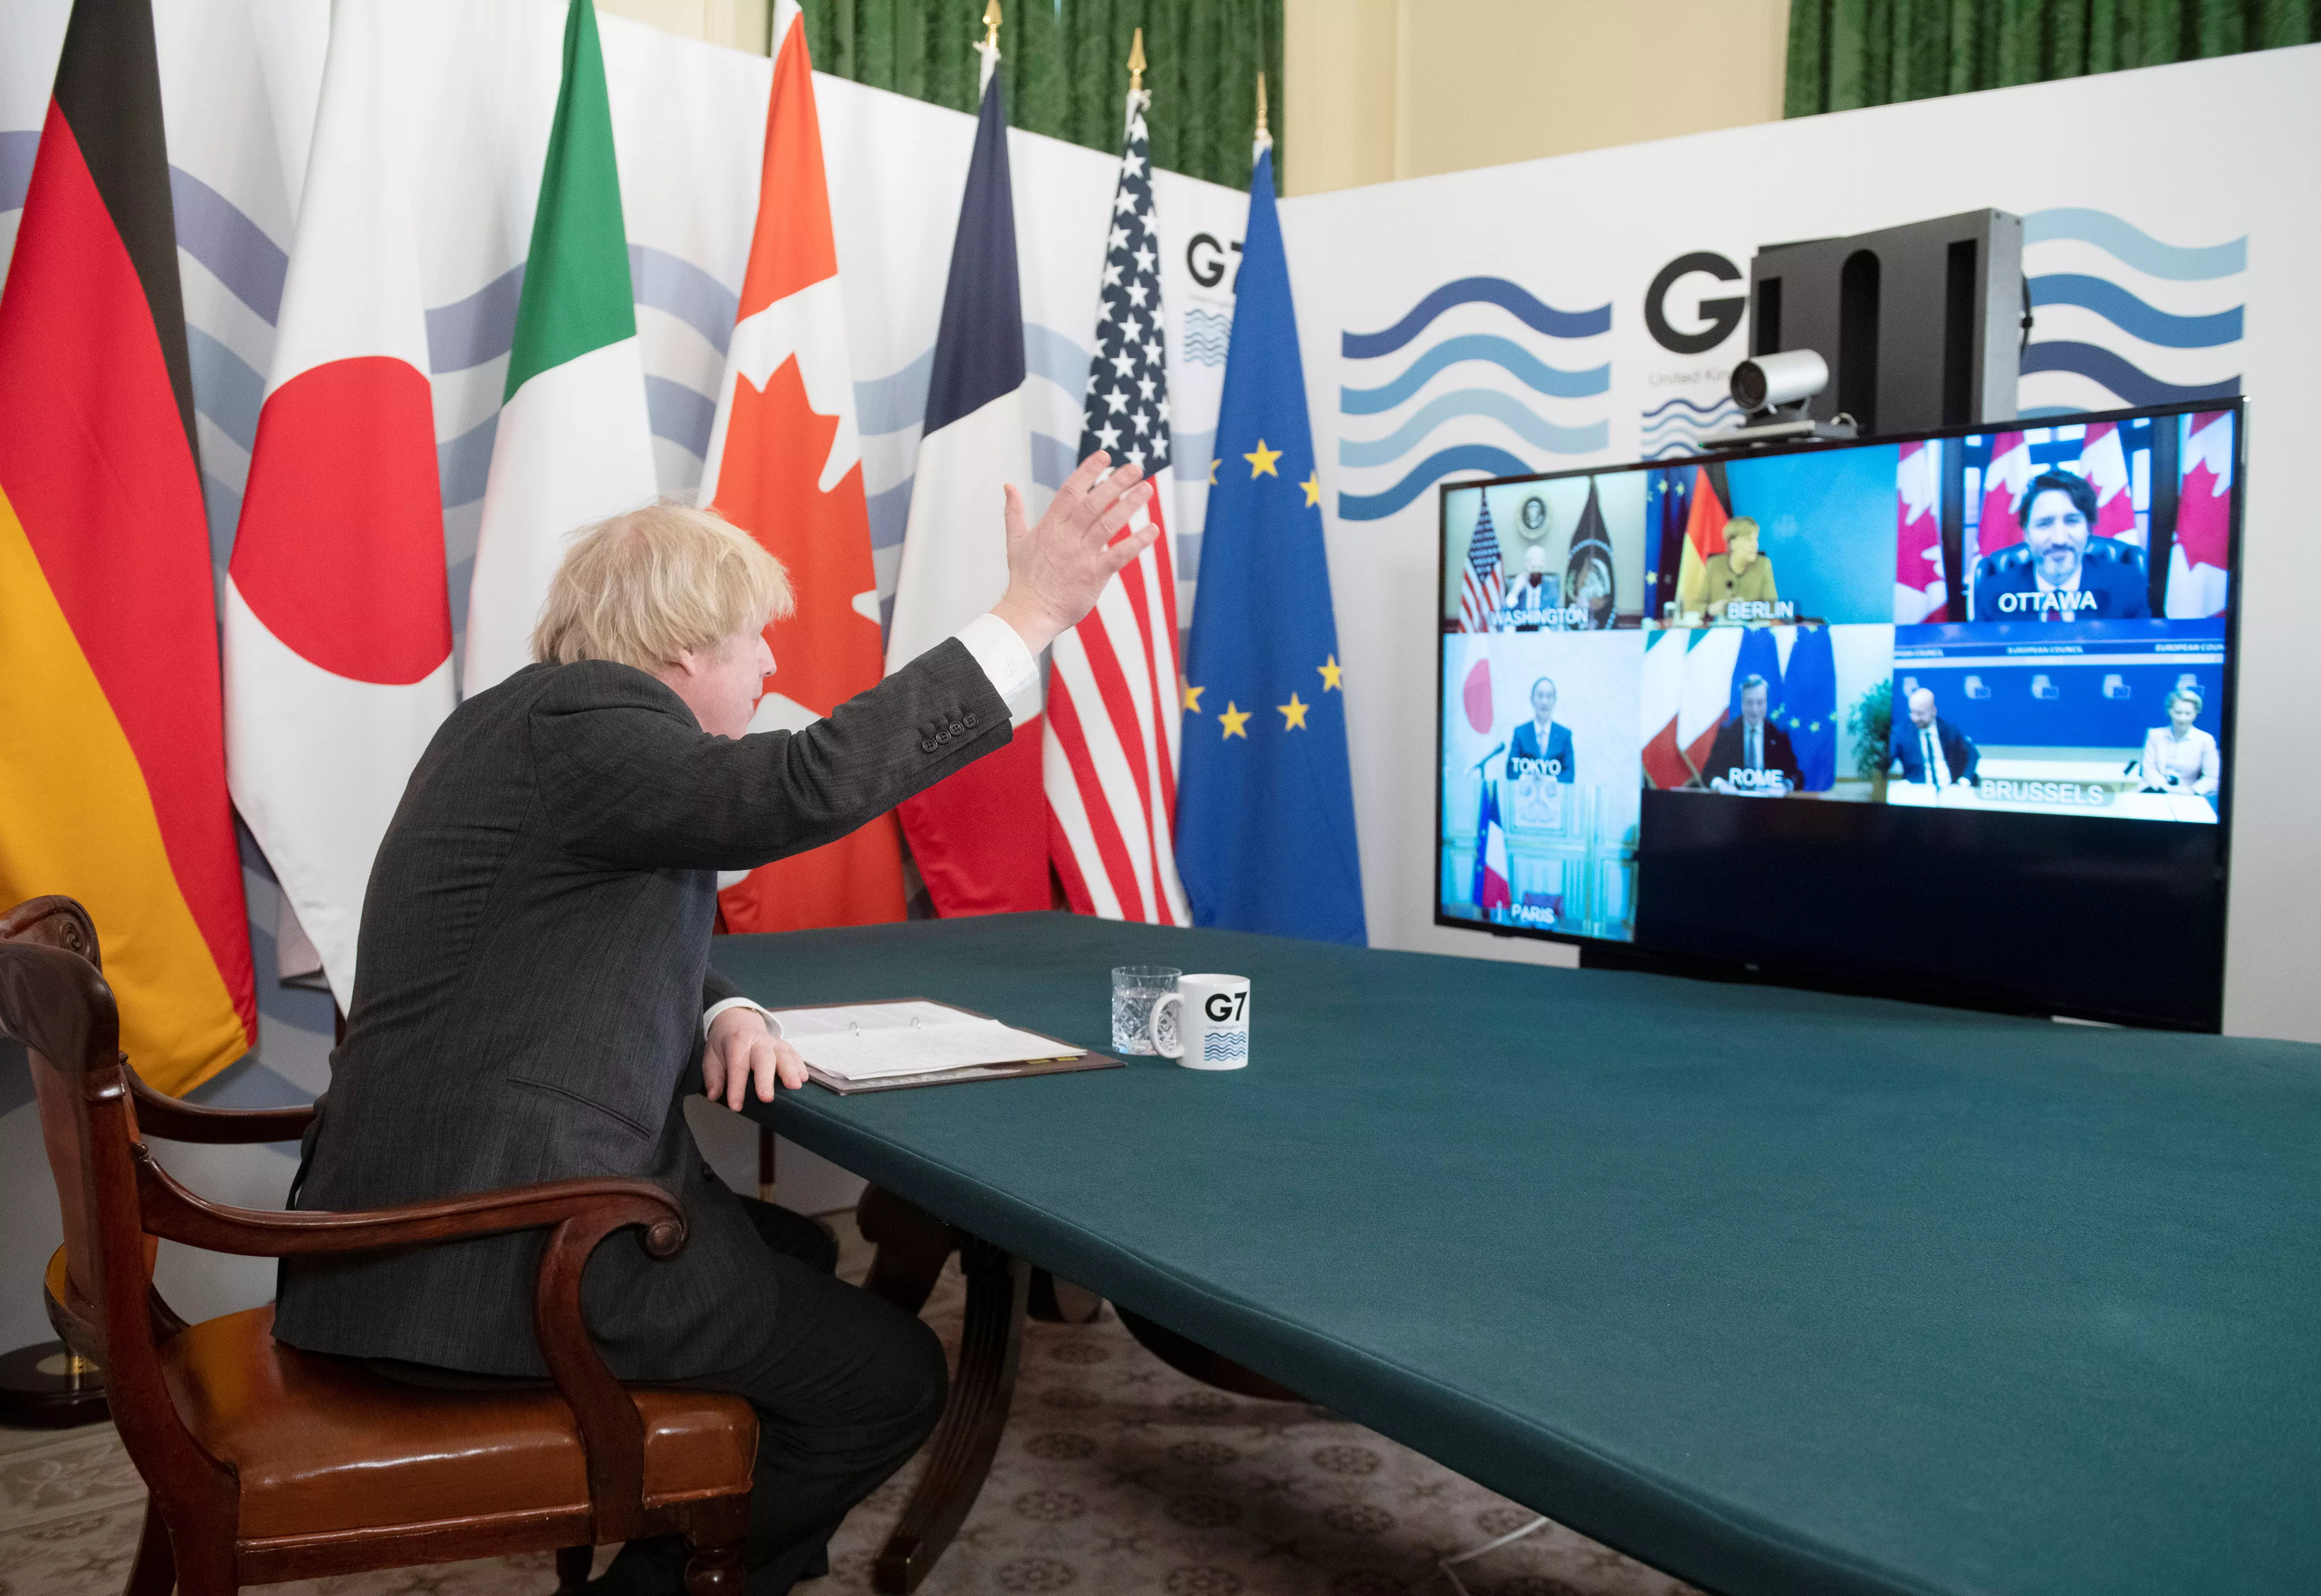 Борис Джонсон на саммите G7. Фото: Geoff Pugh/REUTERS